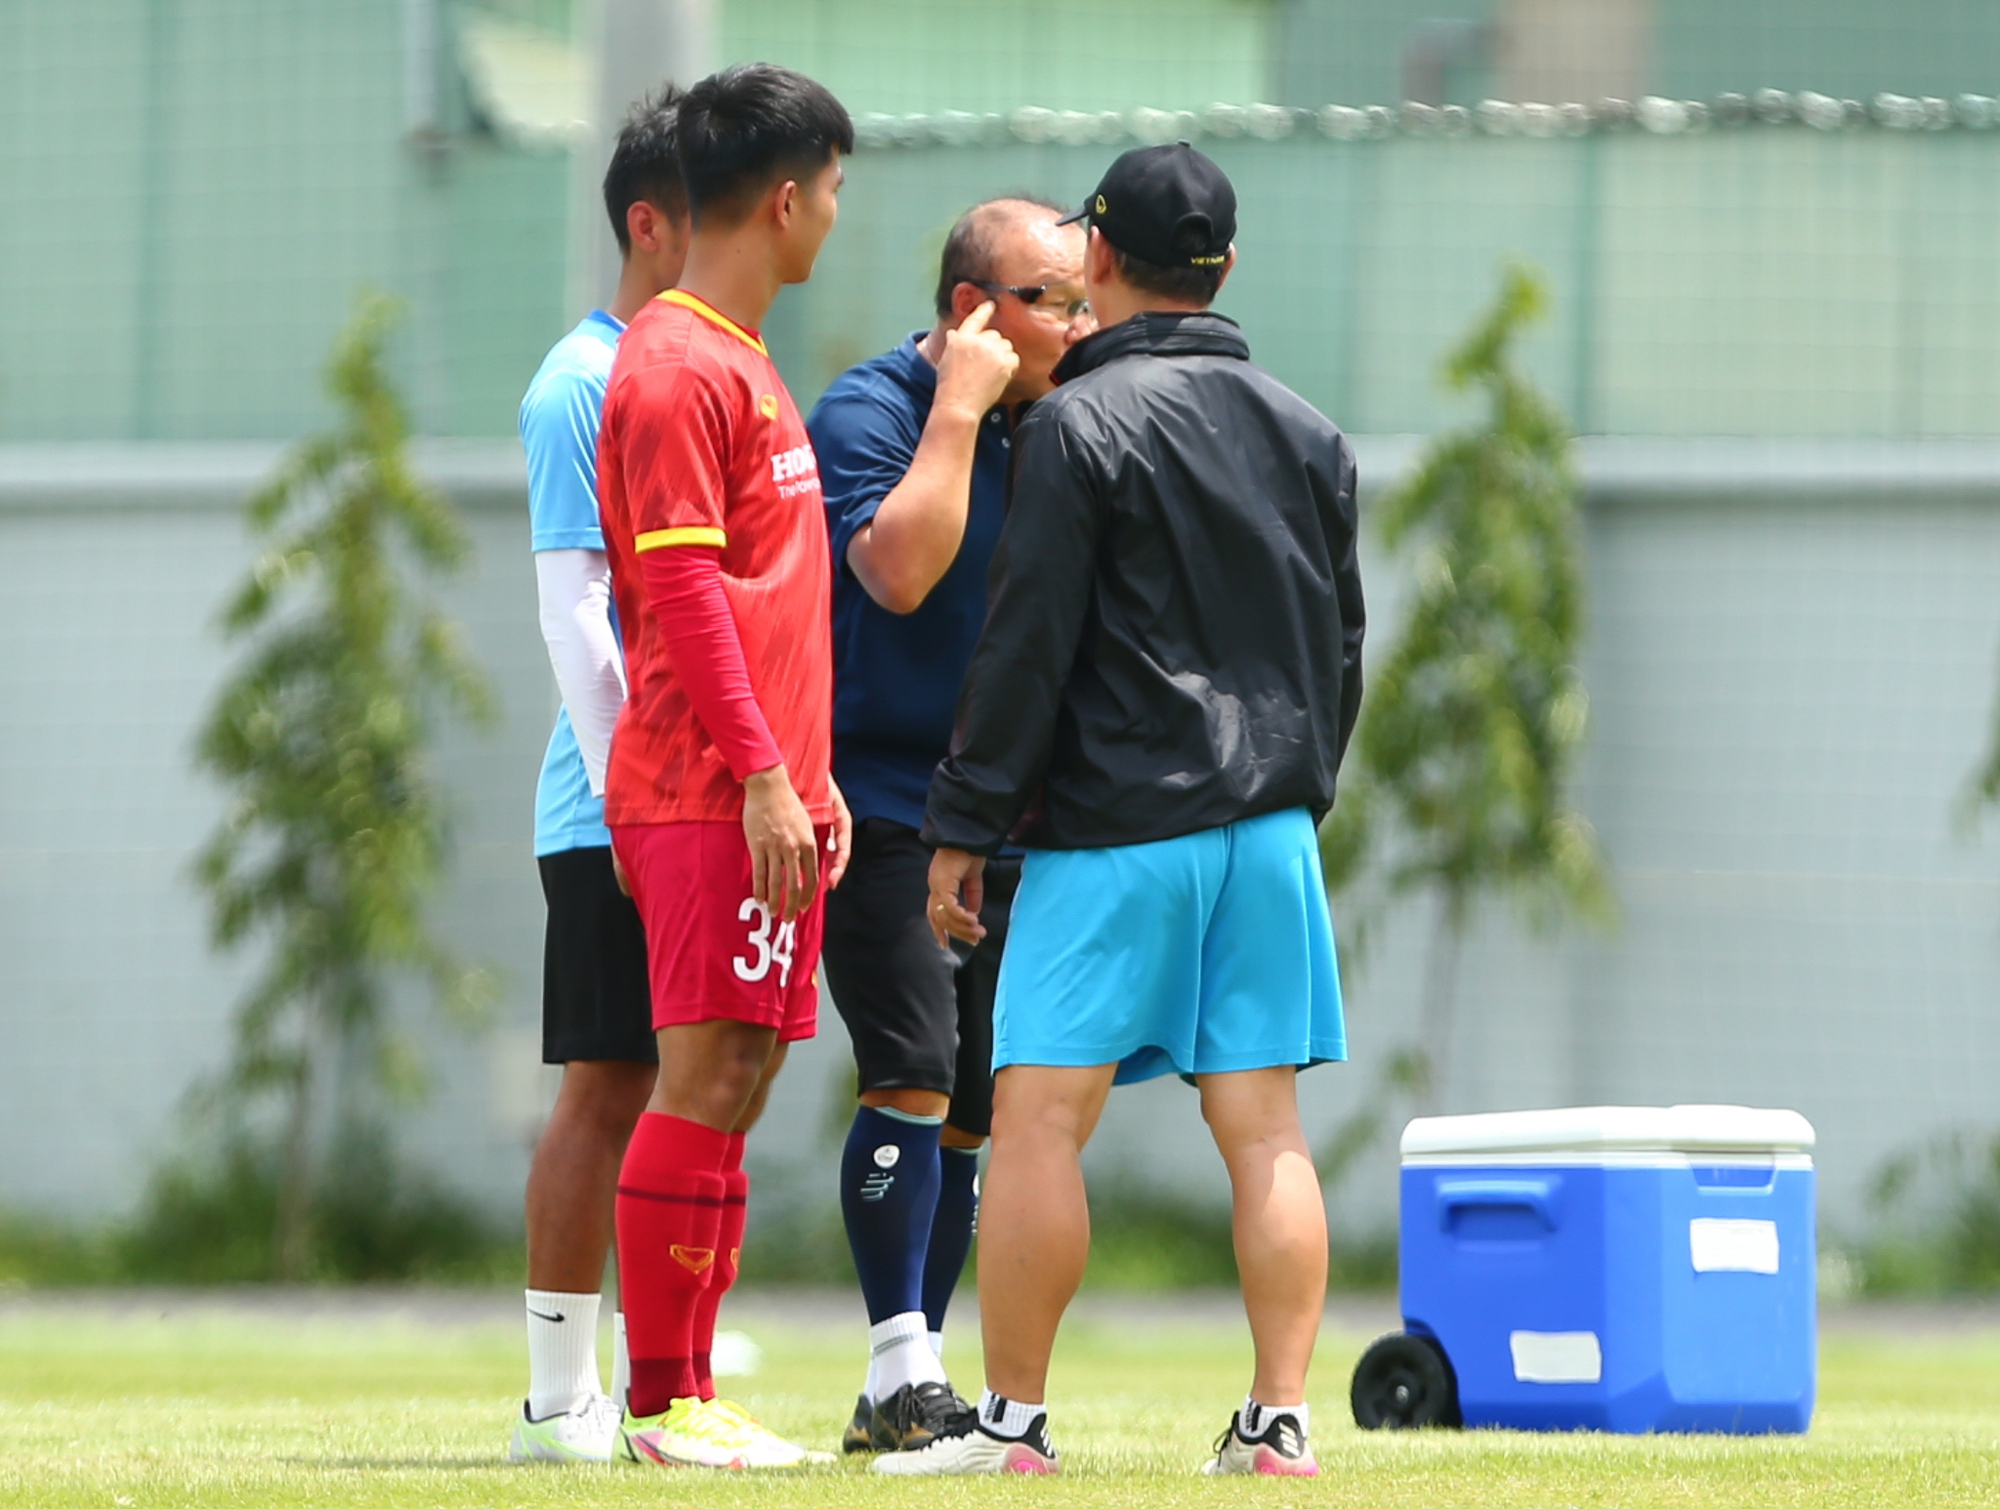 HLV Park Hang-seo giành 15 phút nhắc nhở cầu thủ trẻ - Ảnh 2.